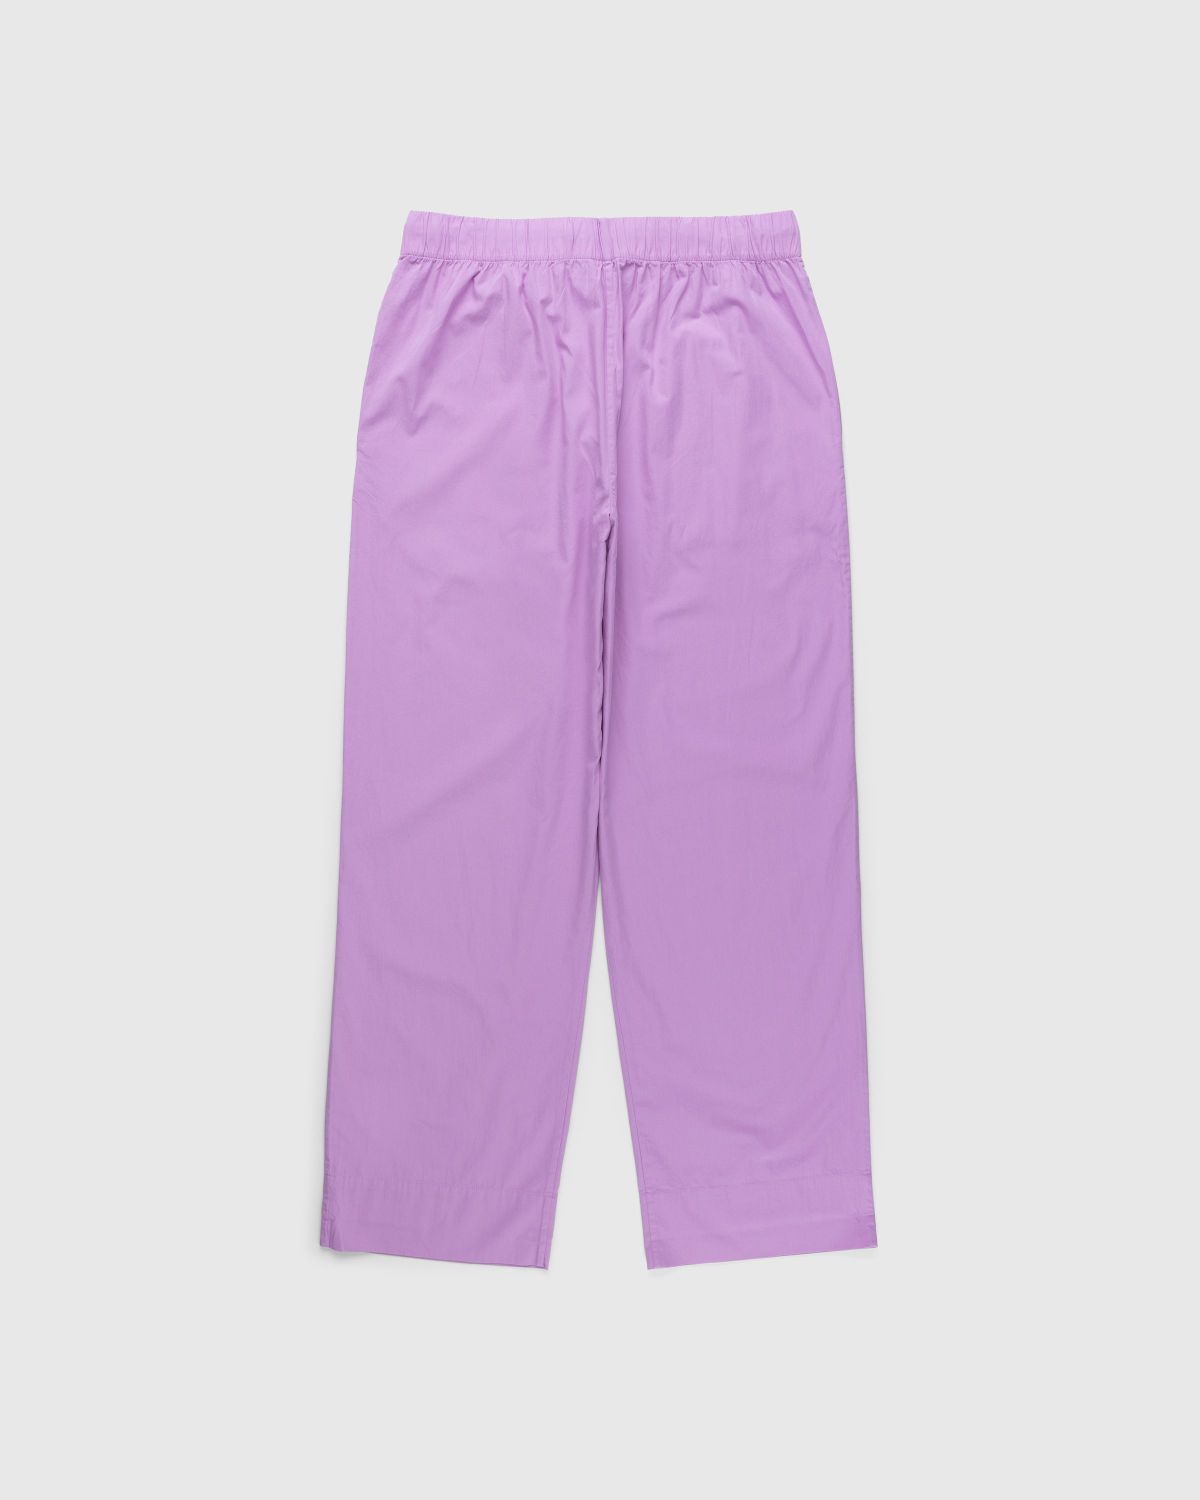 Tekla – Cotton Poplin Pyjamas Pants Purple Pink - Pyjamas - Pink - Image 2